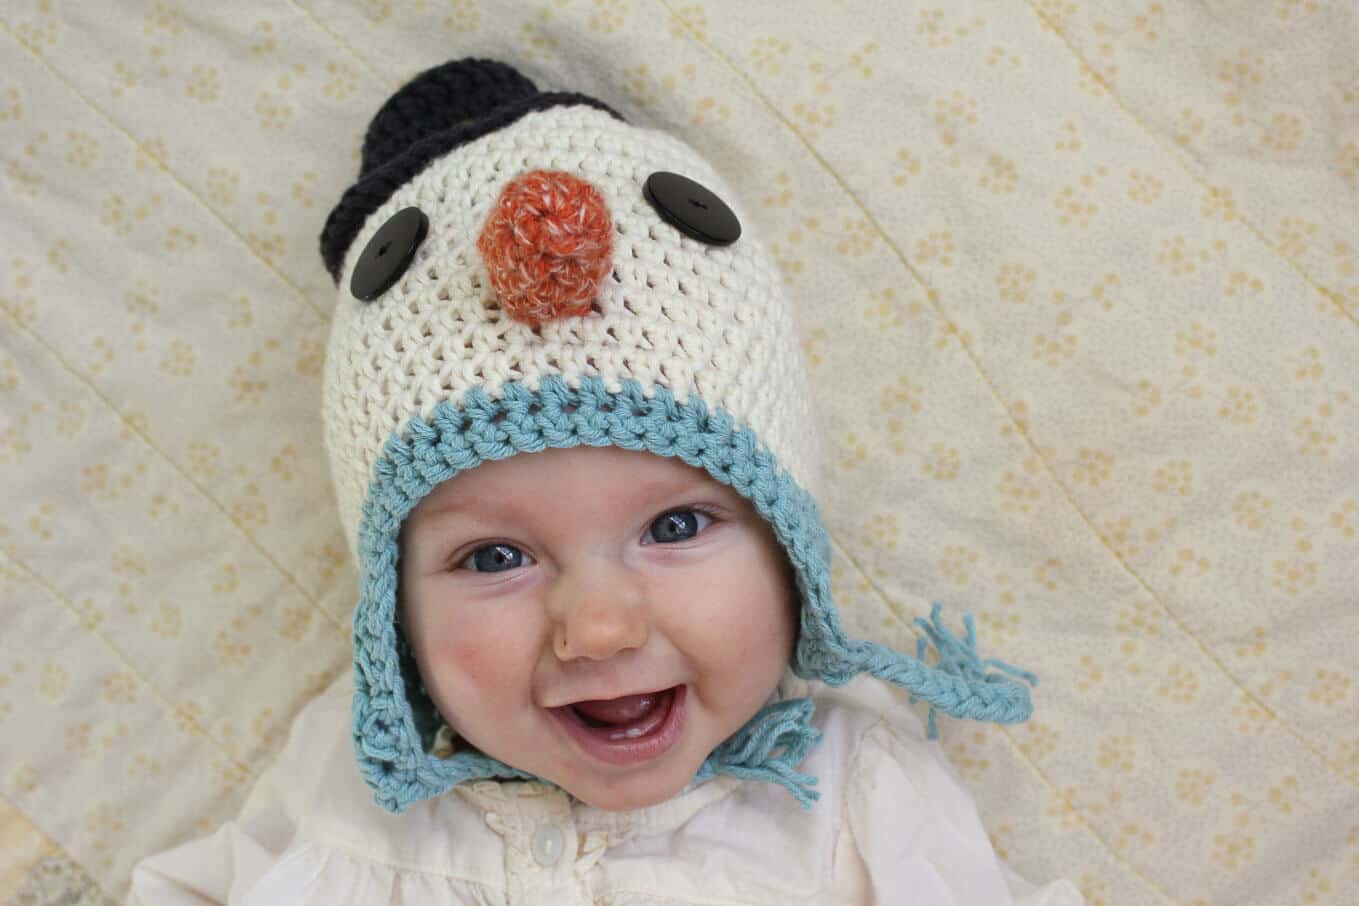 Baby Snowman hat